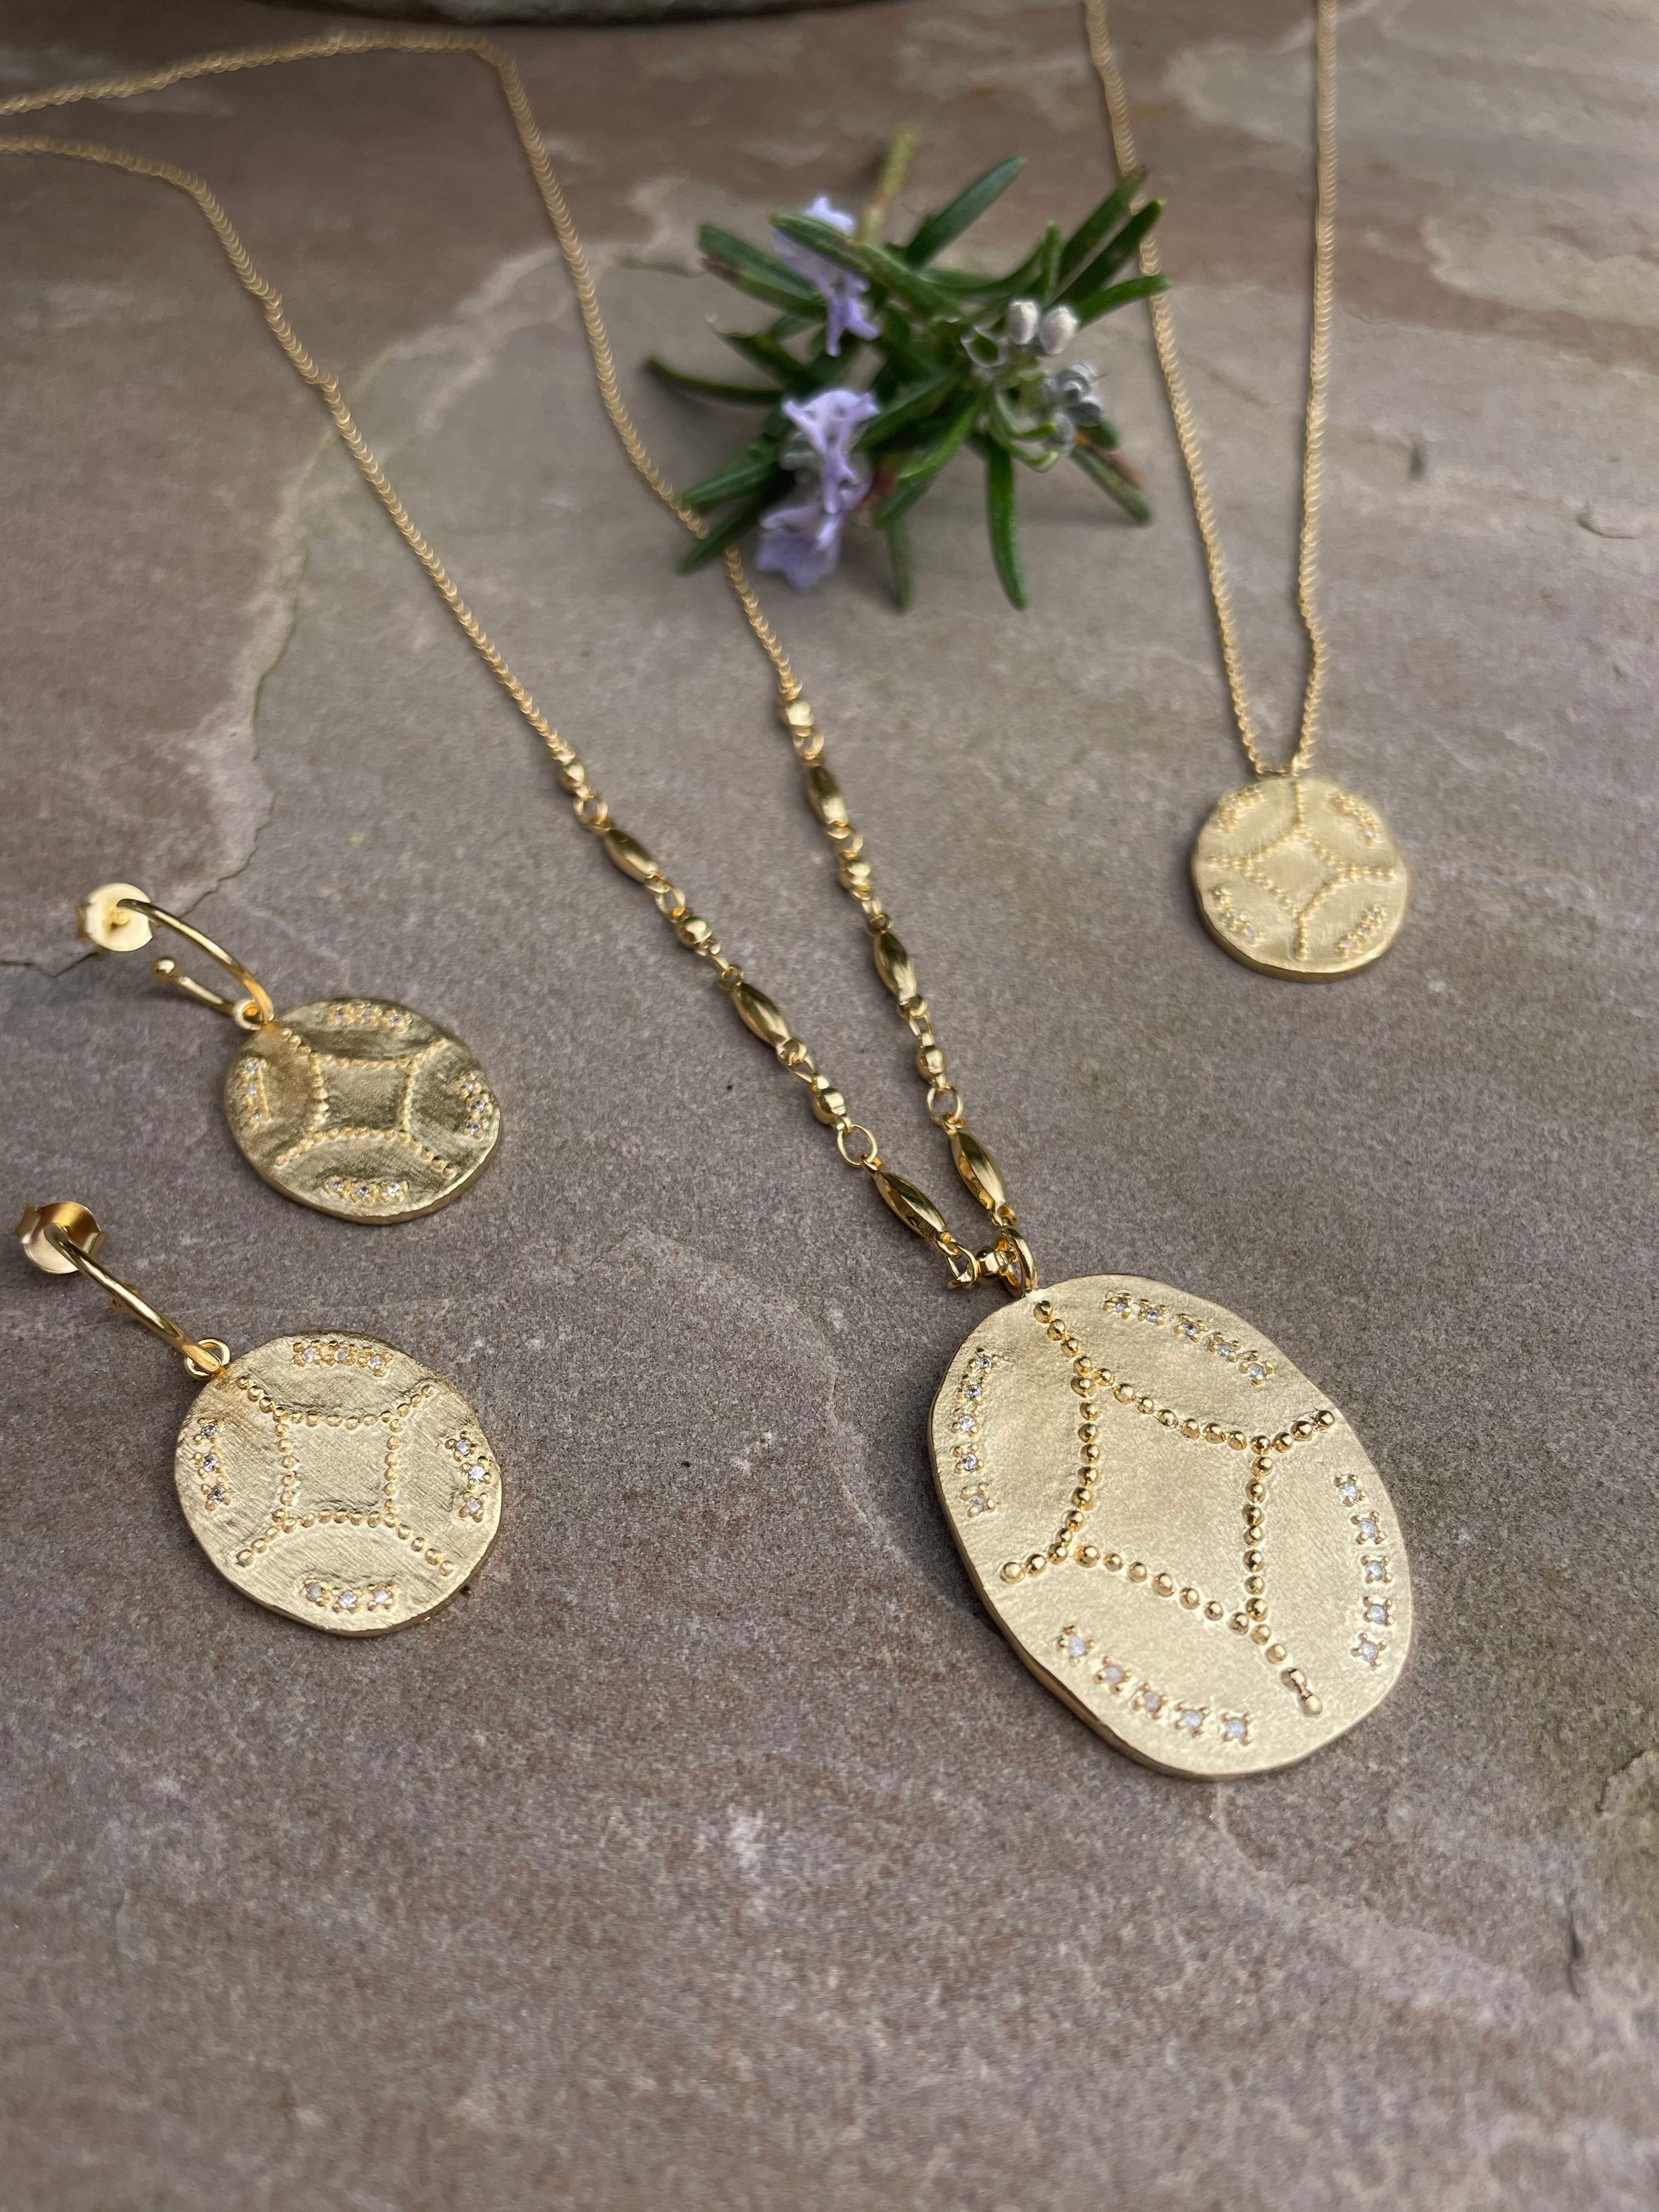 nomad necklace louise hendricks brushed gold pendant jewellery